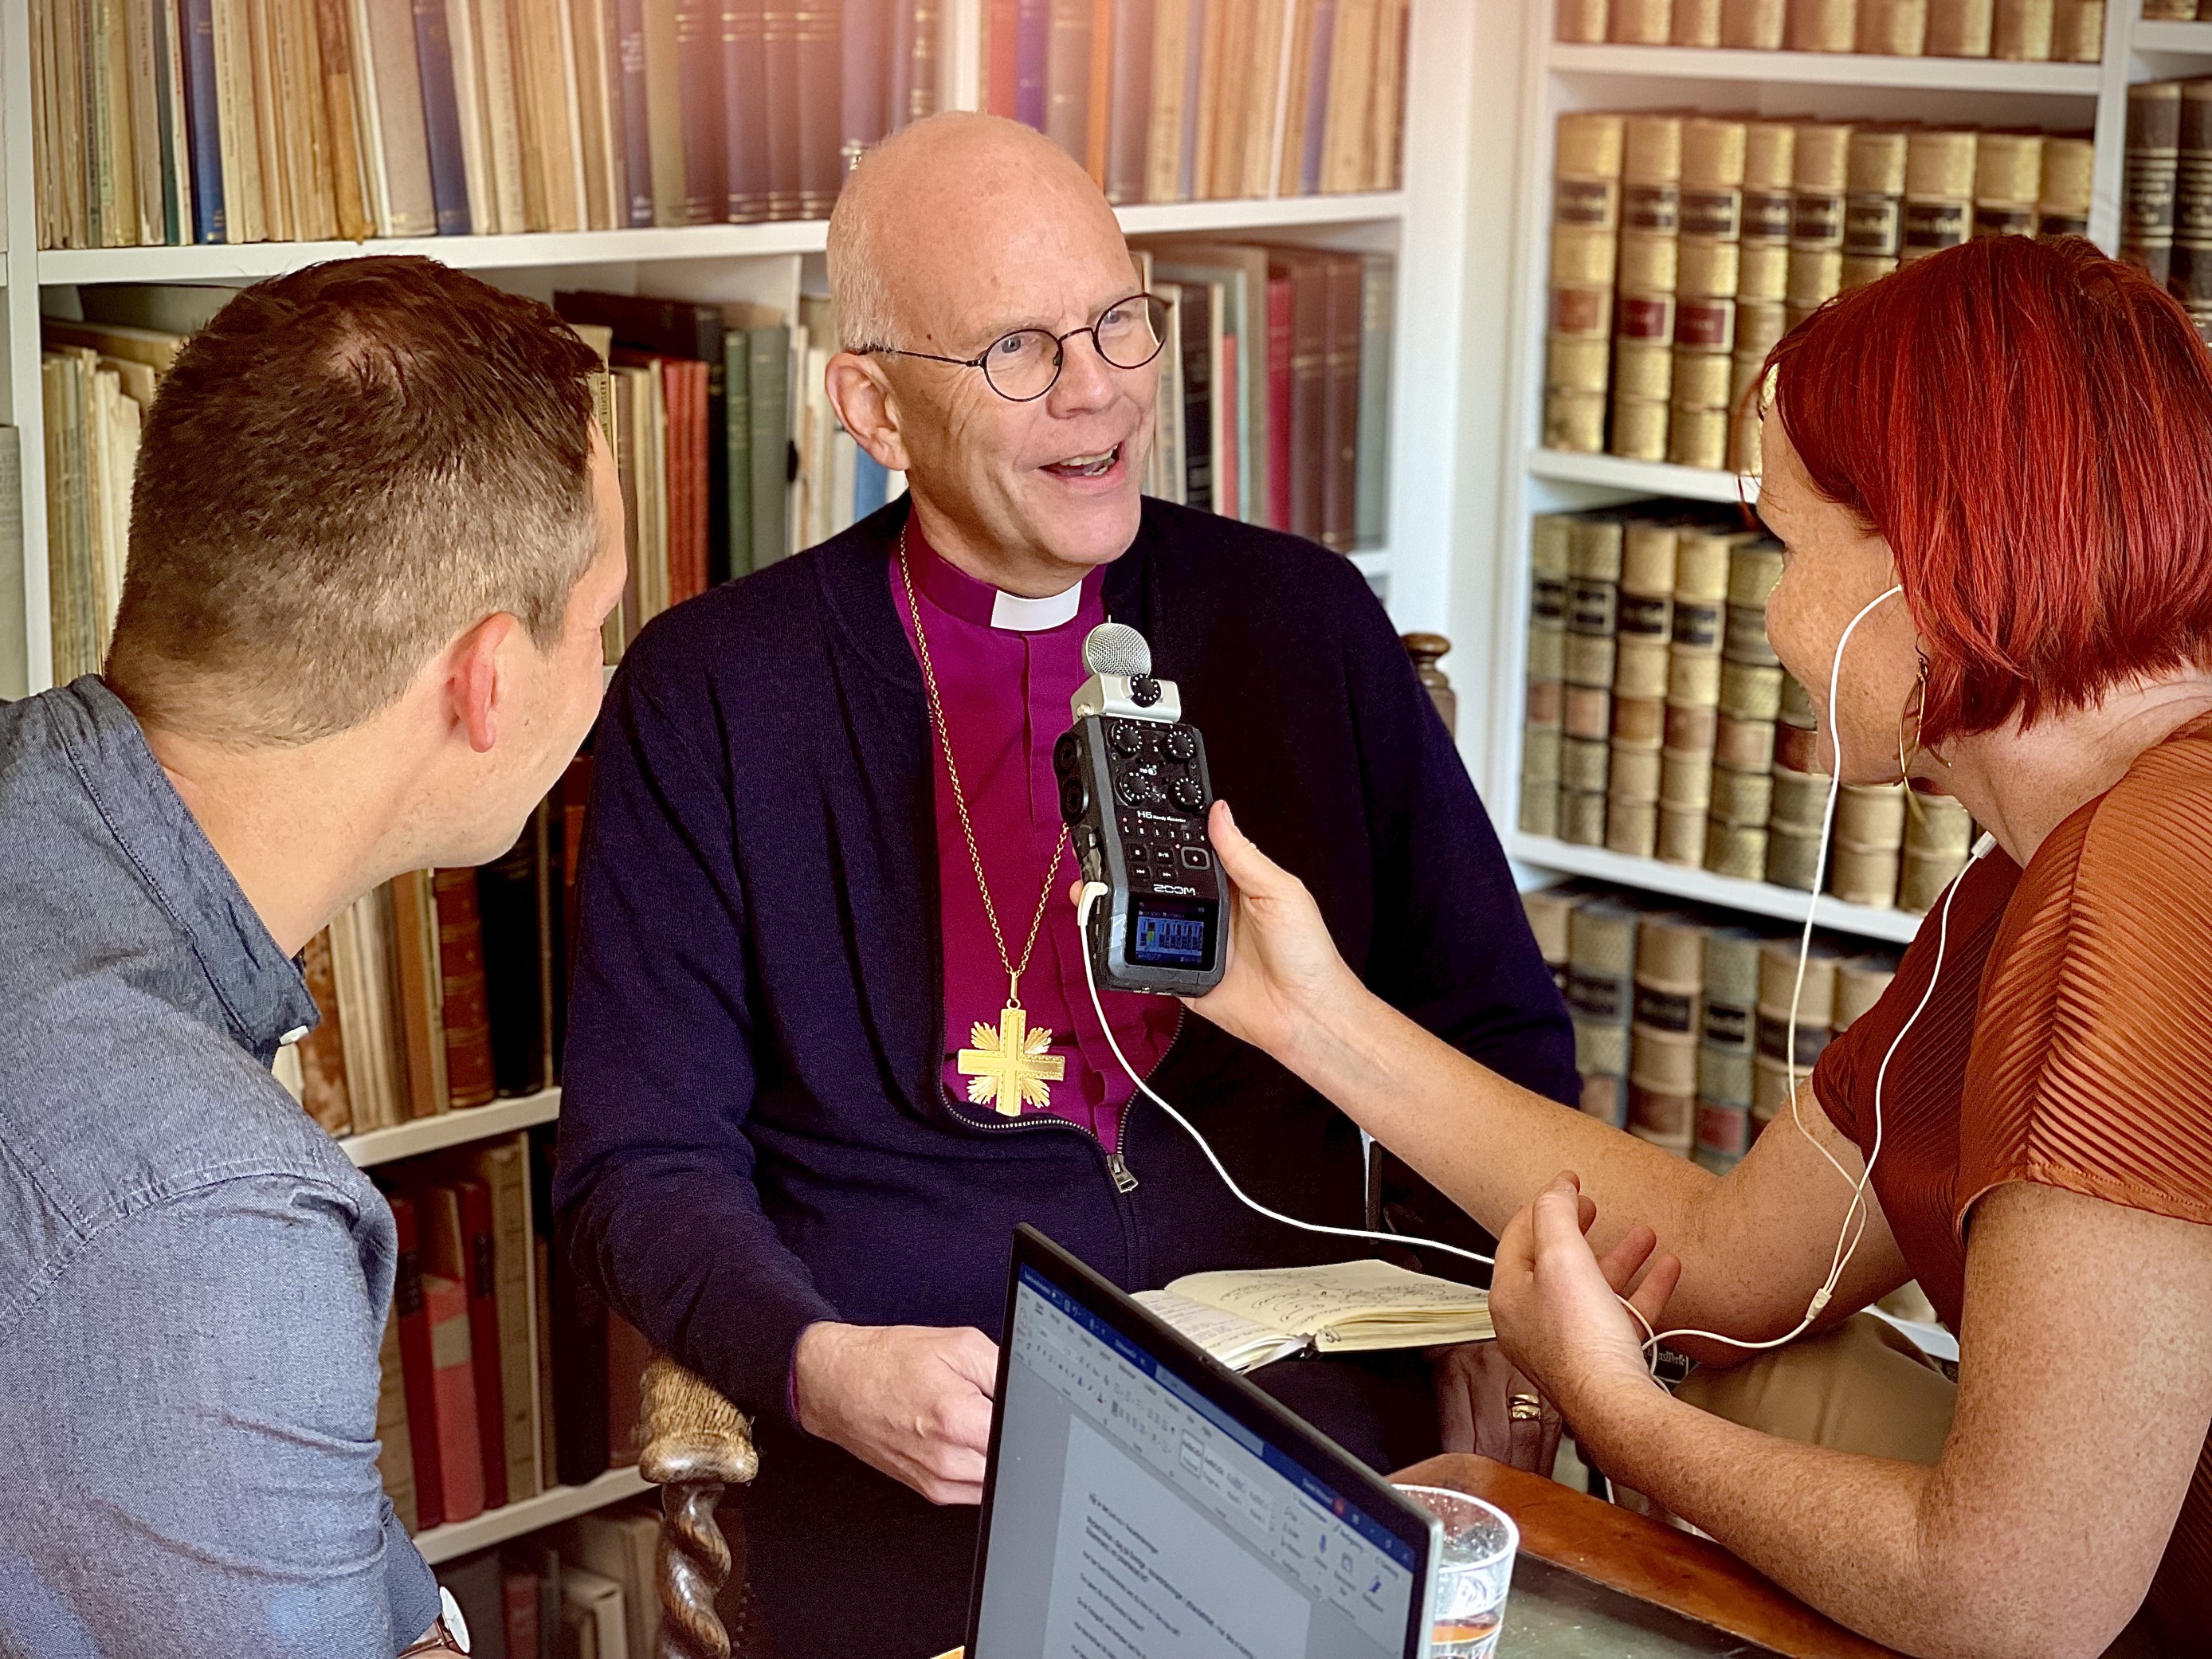 Ärkebiskop Martin Modéus blir intervjuad i ett rum fyllt av bokhyllor.